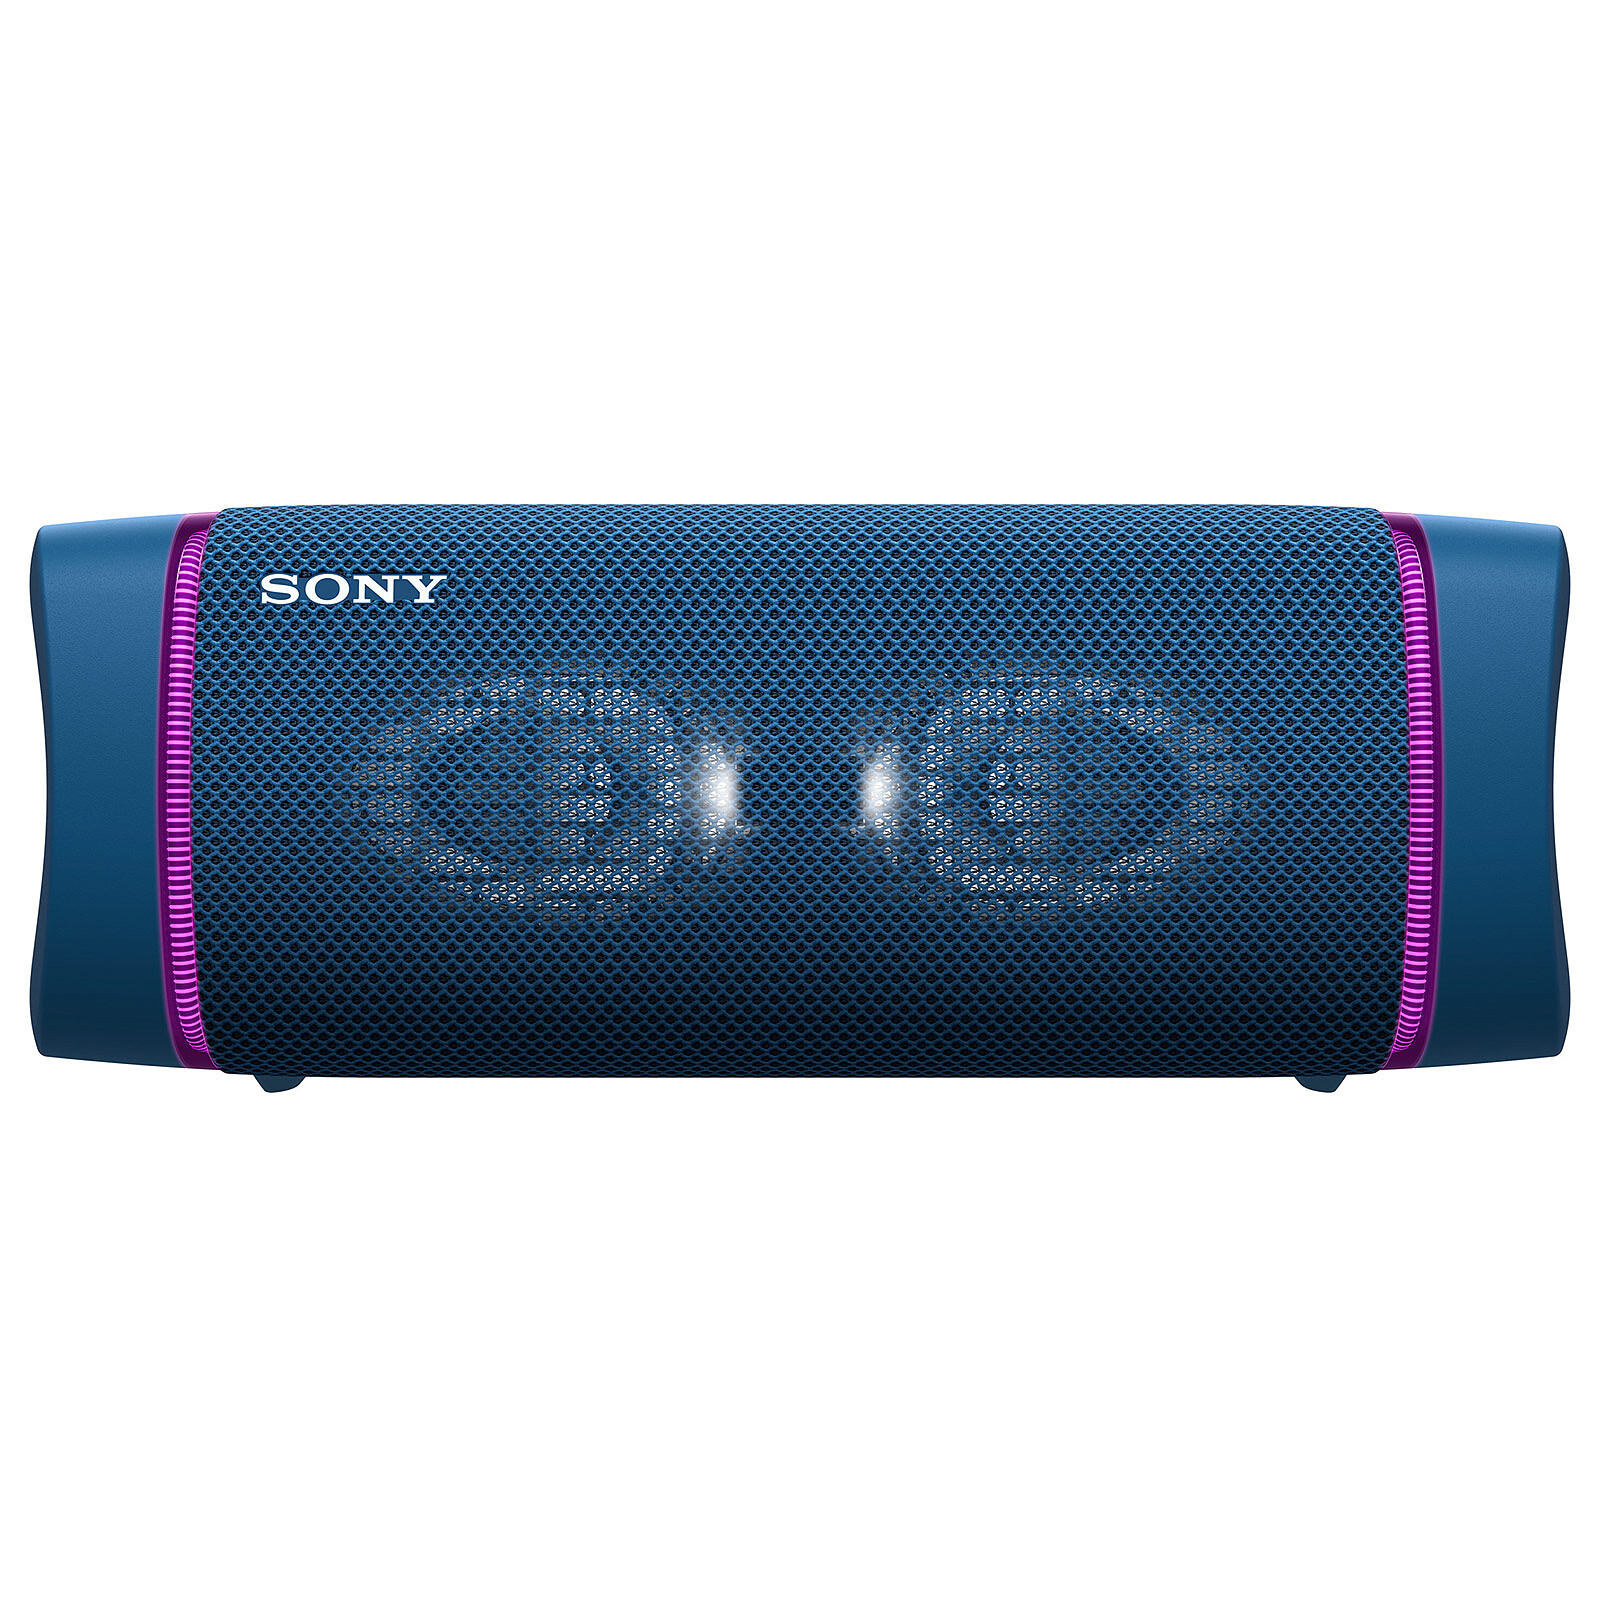 Sony SRS-XB33 Blue - Bluetooth speaker - LDLC 3-year warranty